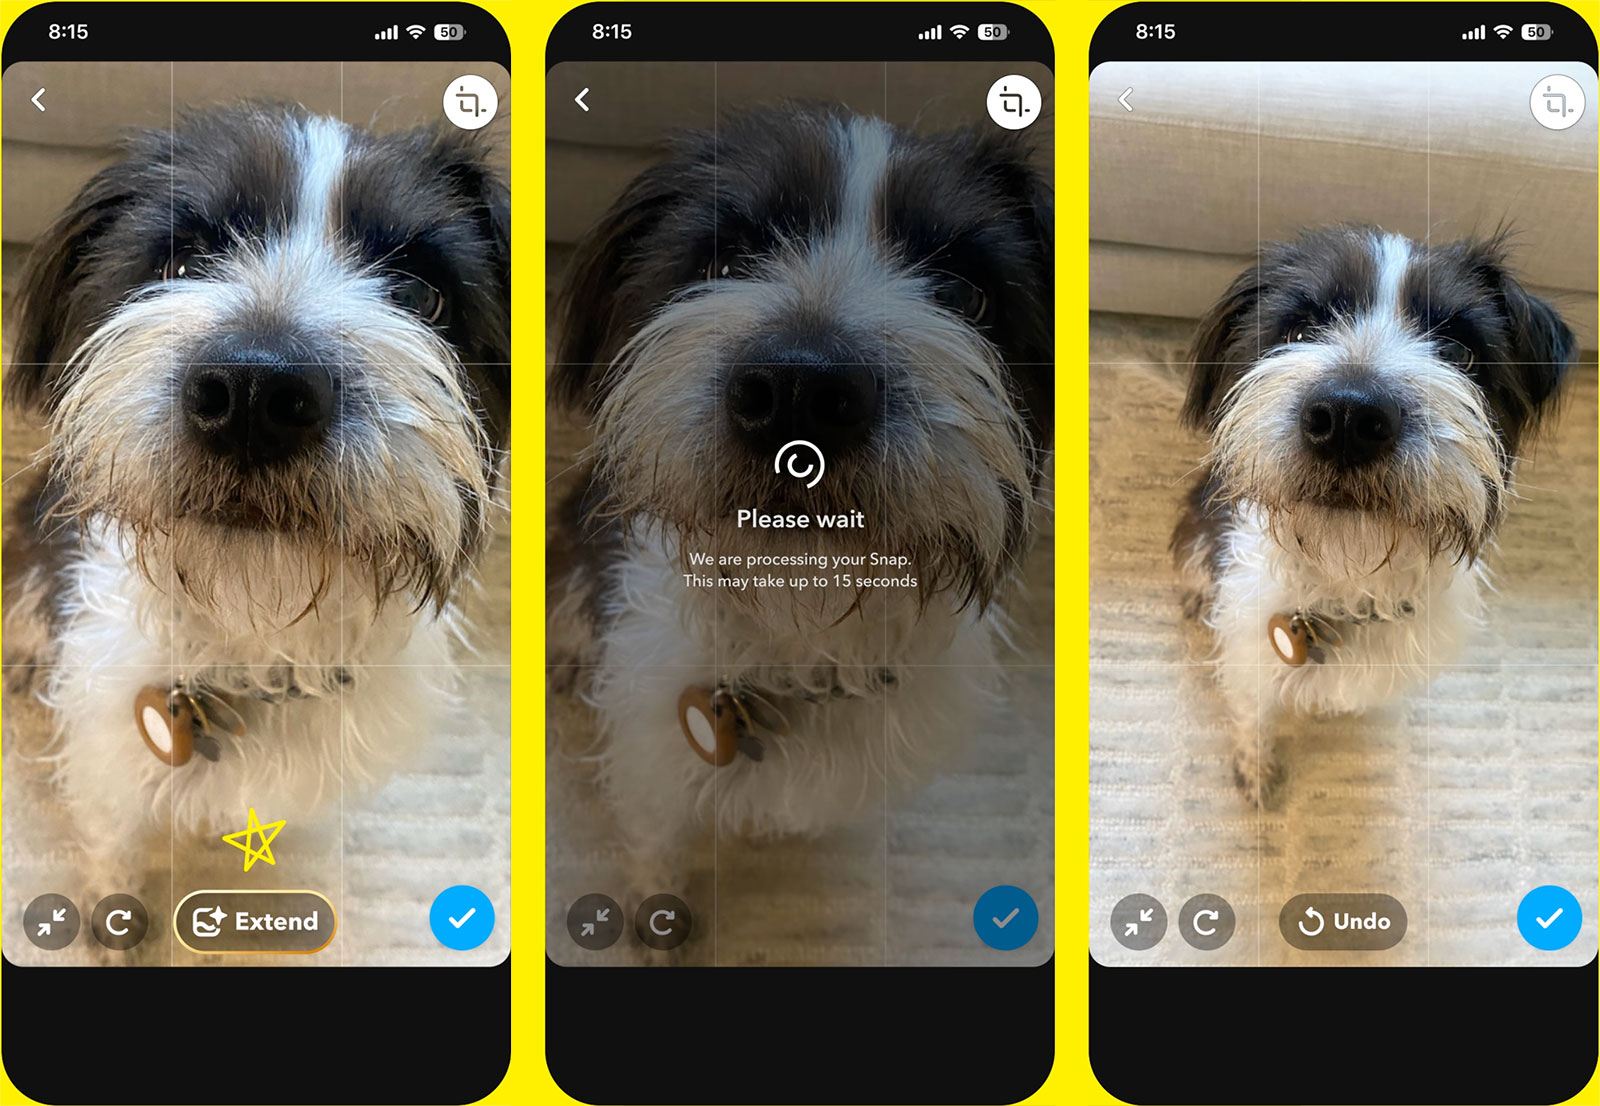 Snapchat+-abonnenter kan nu bruge AI til at skabe eller udvide billeder i appen